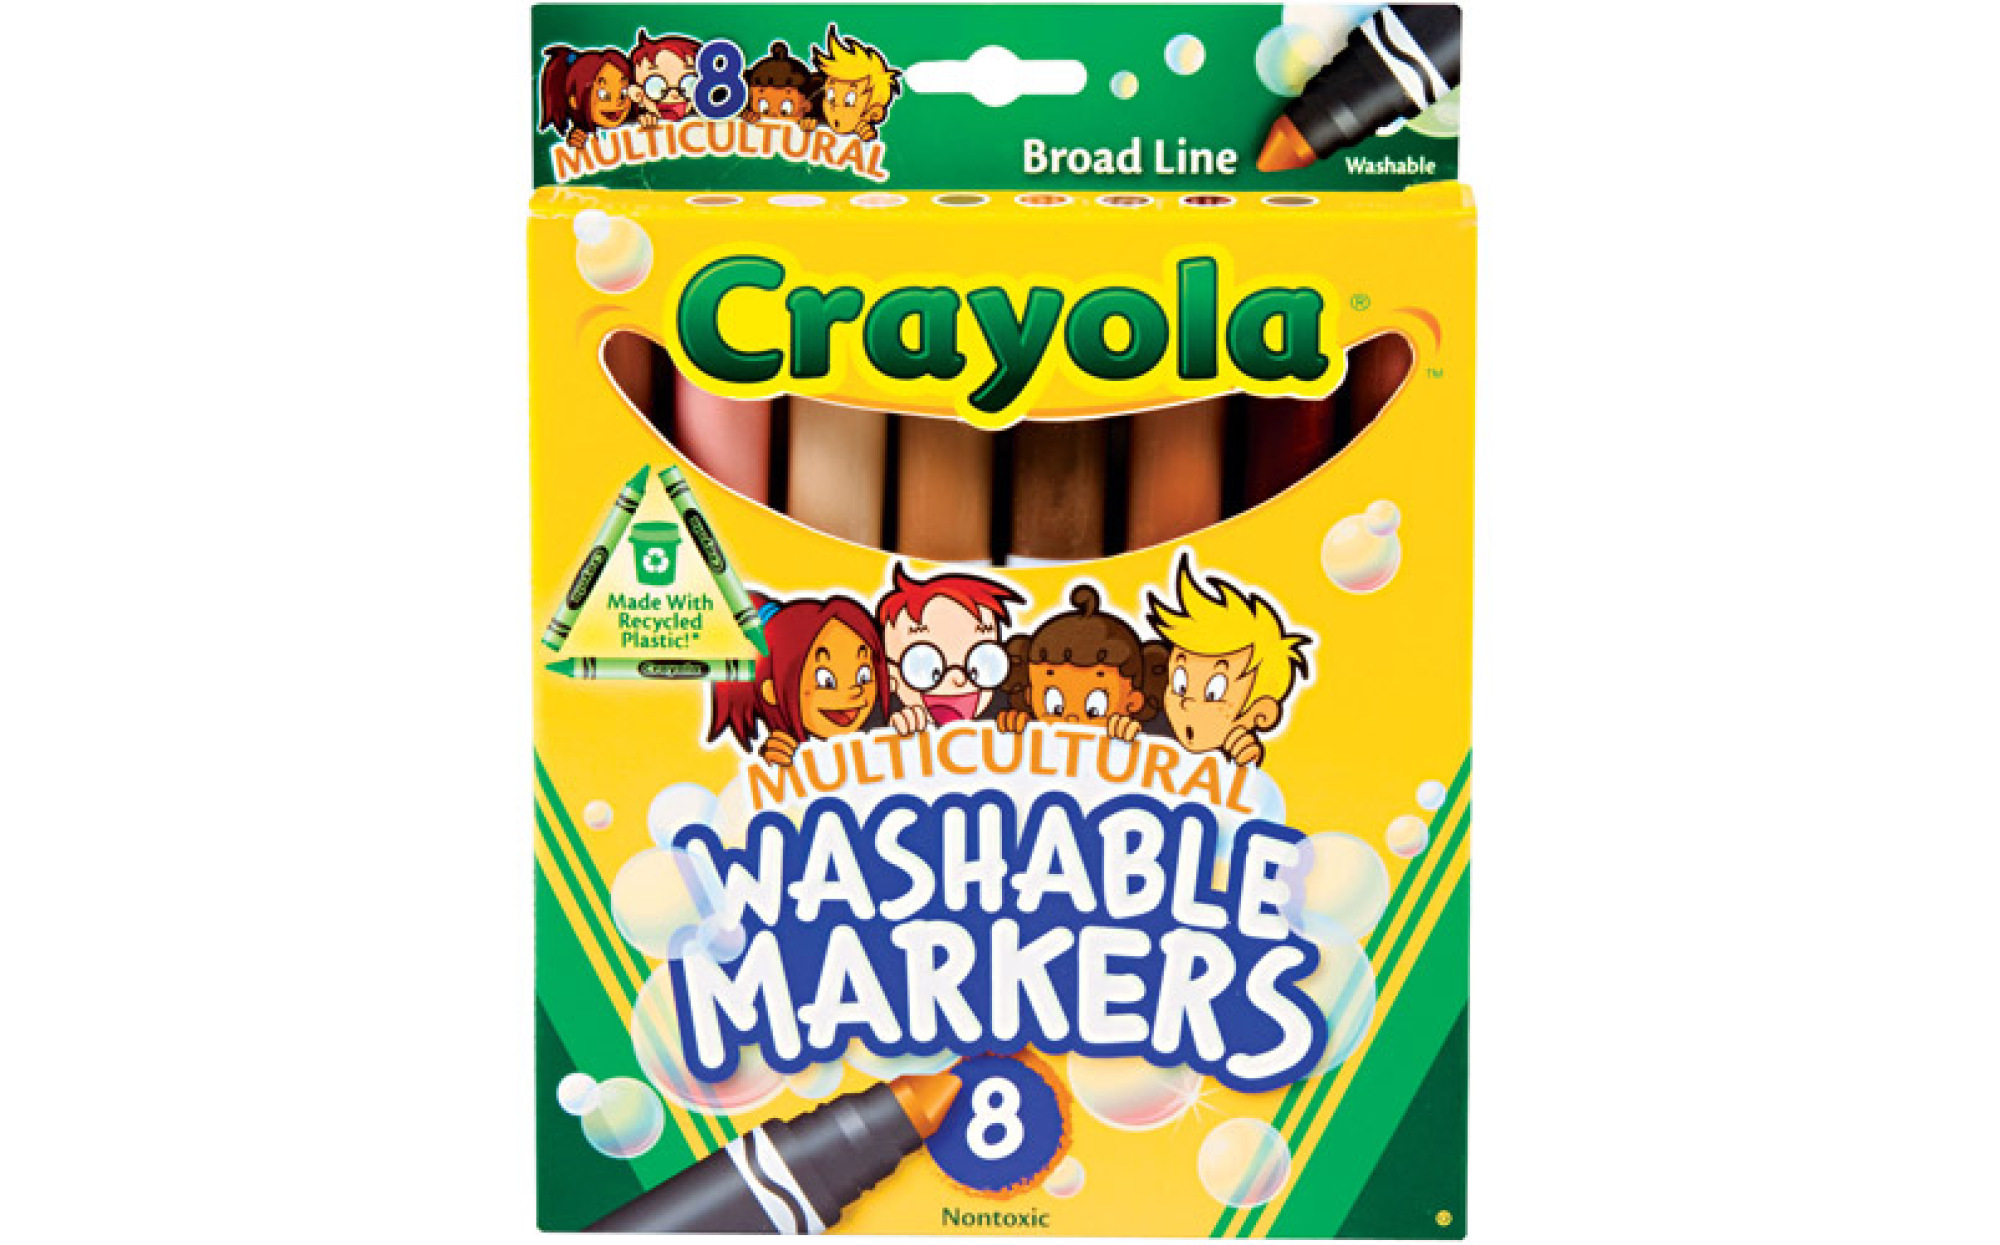 Crayola: 8 Multicultural Crayons